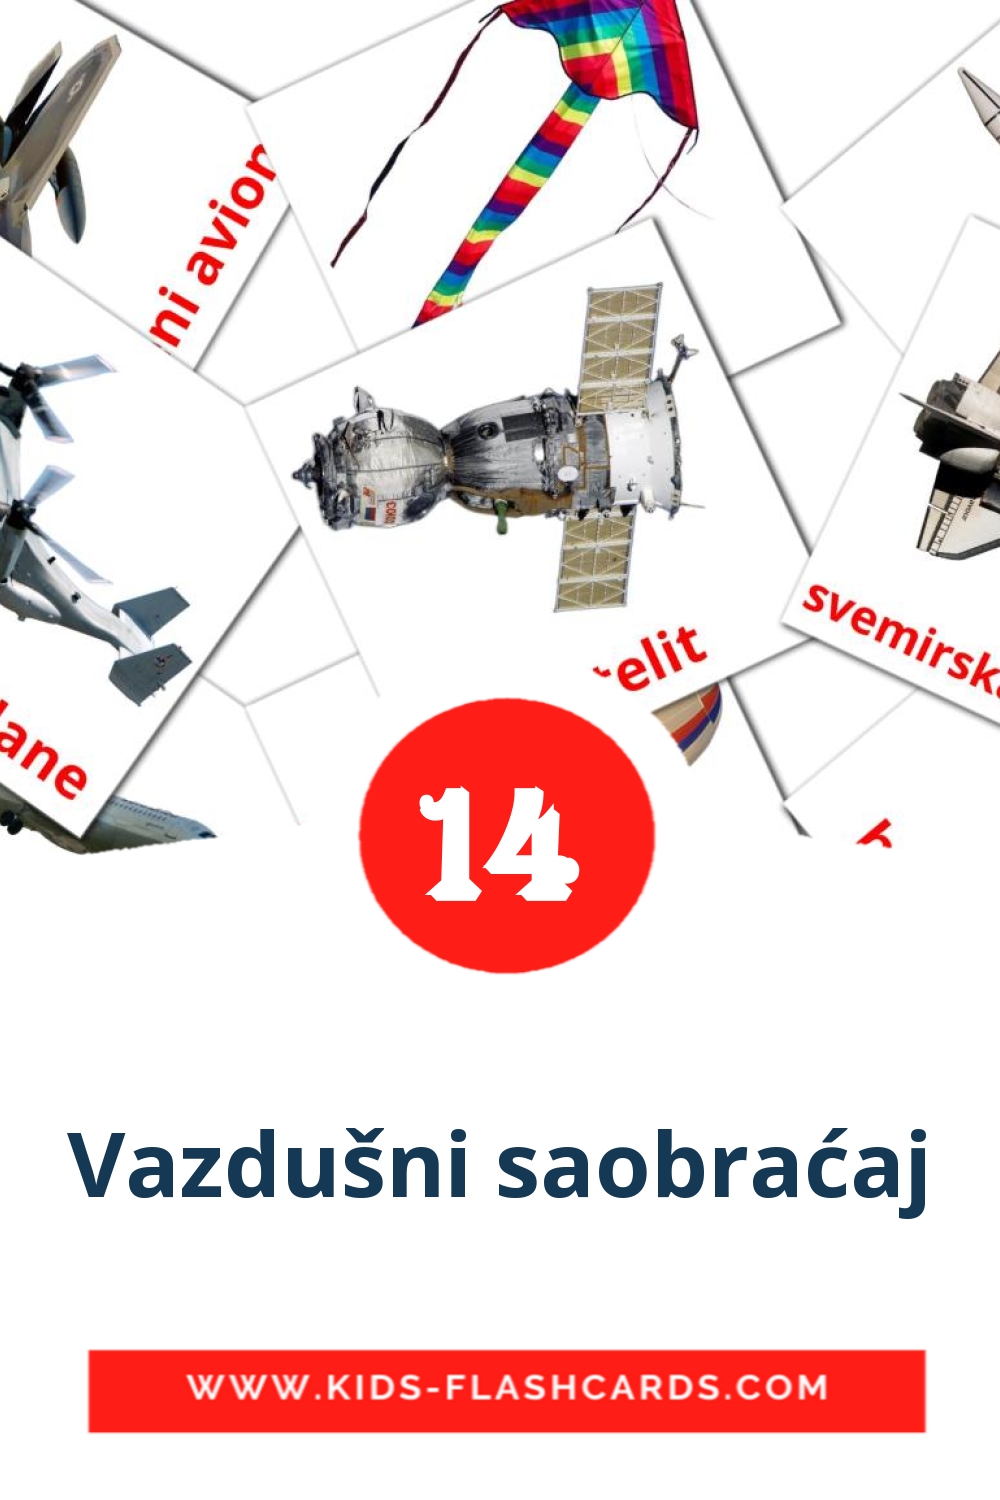 14 tarjetas didacticas de Vazdušni saobraćaj para el jardín de infancia en serbio